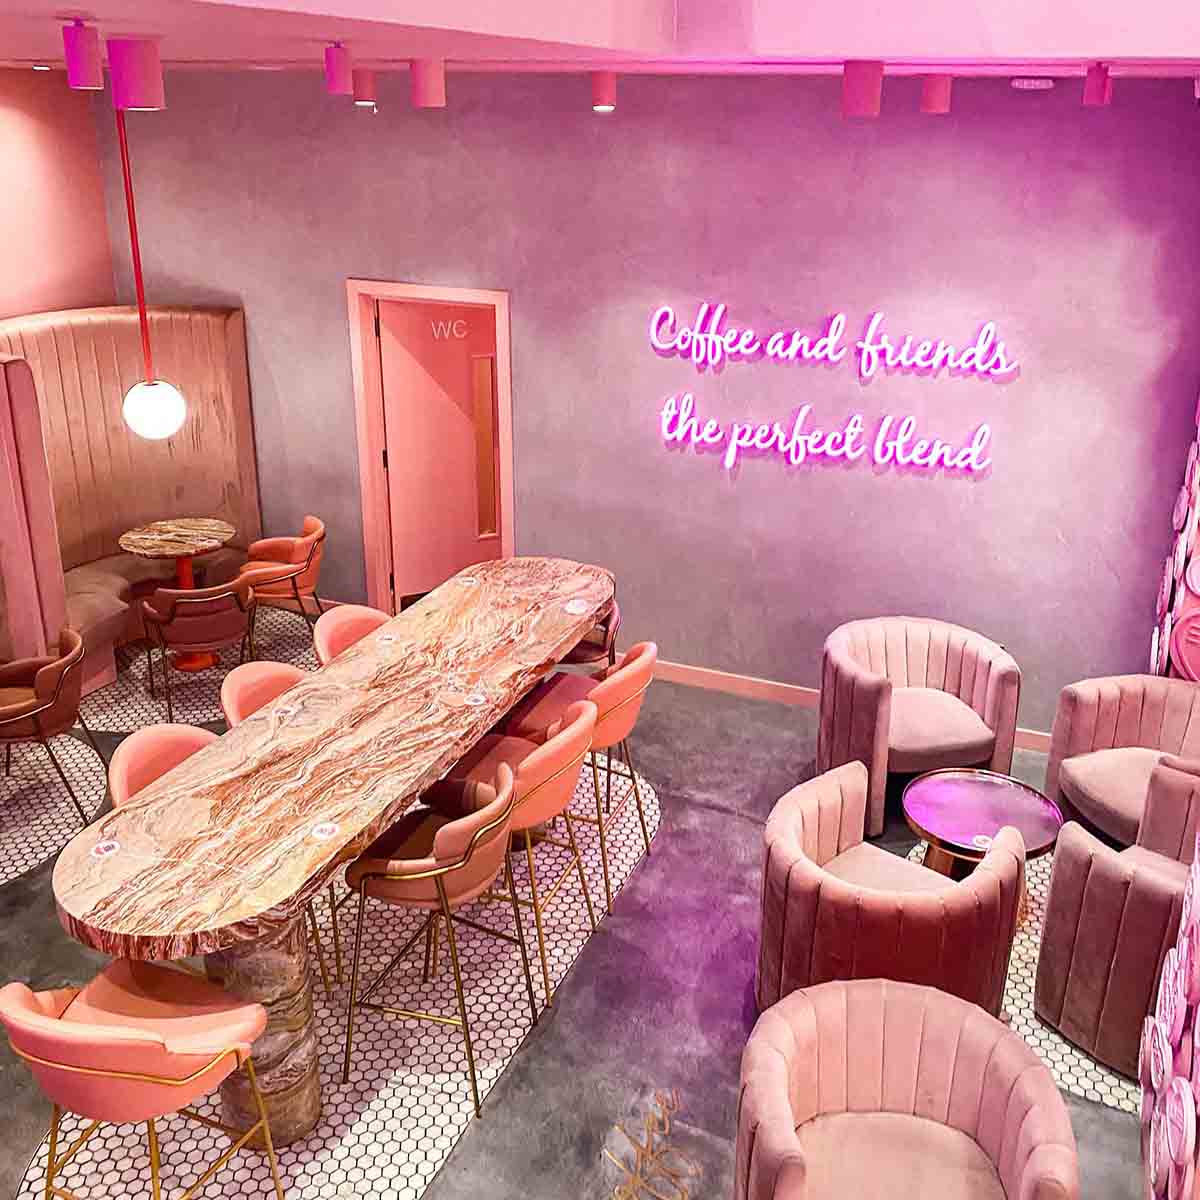 Tiệm cà phê nữ tính với vibe hồng neon. Nguồn: Pinterest